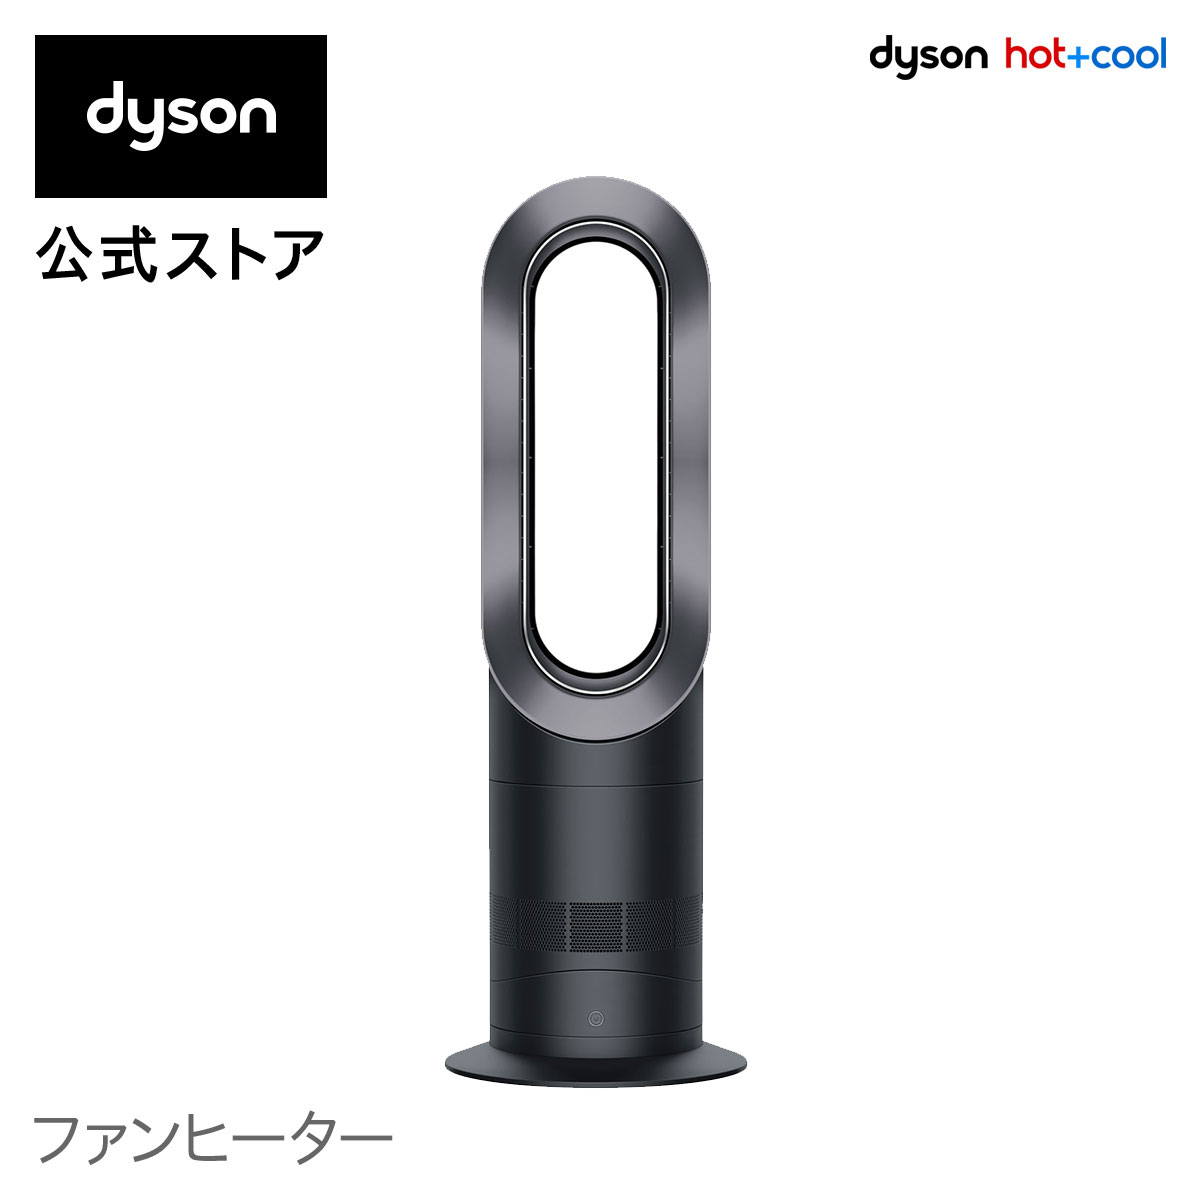 dyson（ダイソン）『Hot+Cool（AM09BIN）』